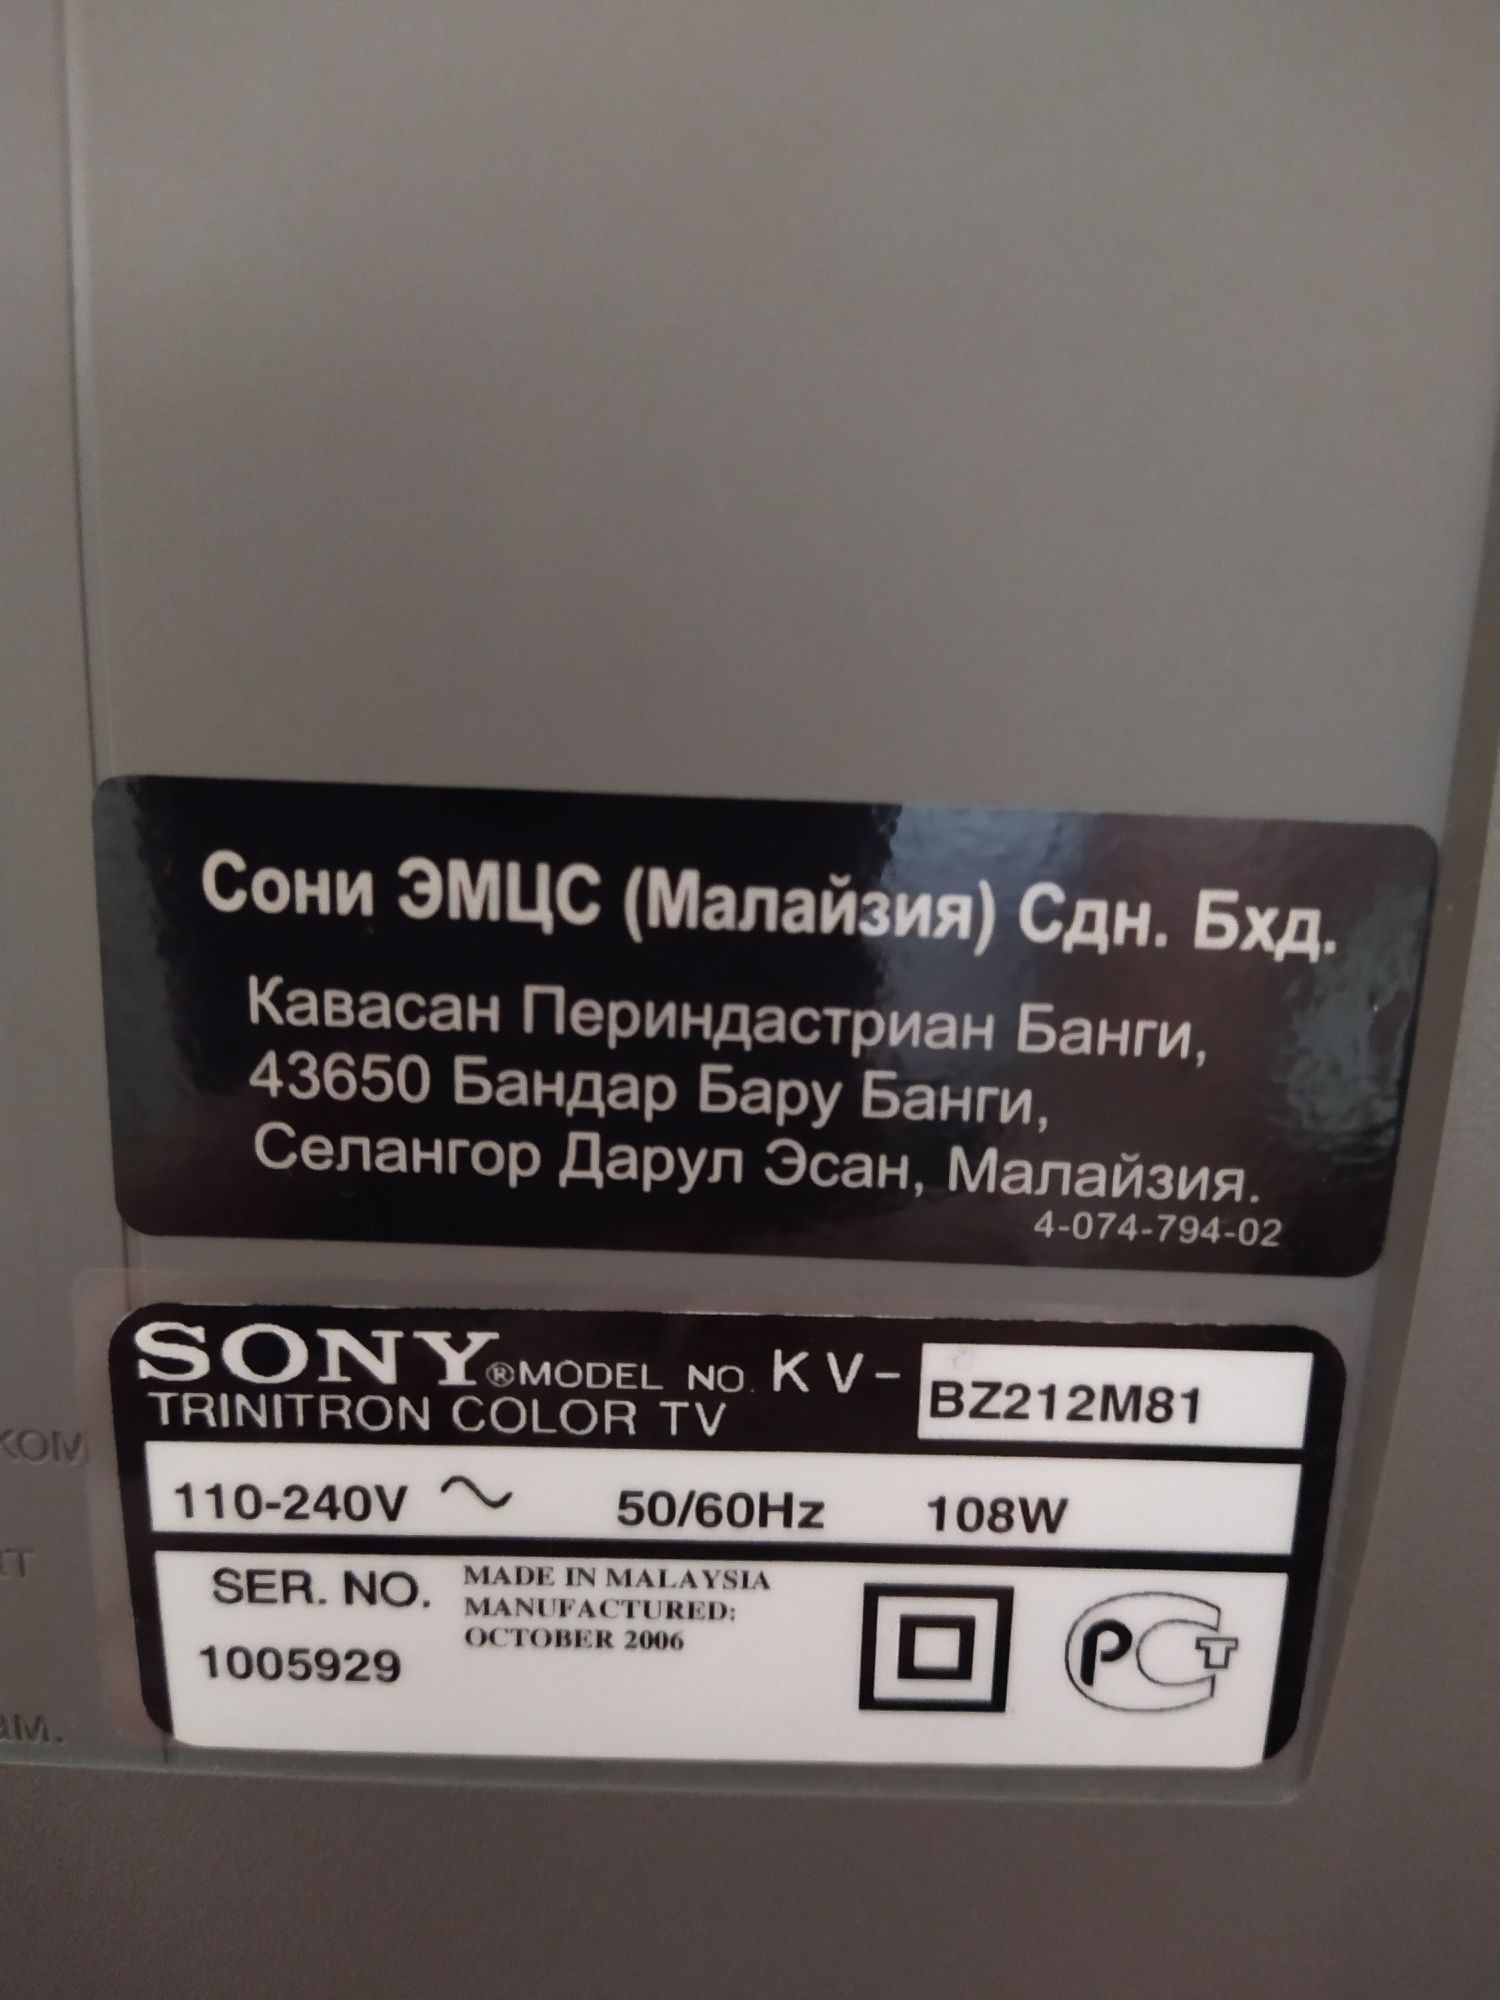 Продам телевизор Sony Wega KV-BZ212M81, Trinitron в отличном состоянии